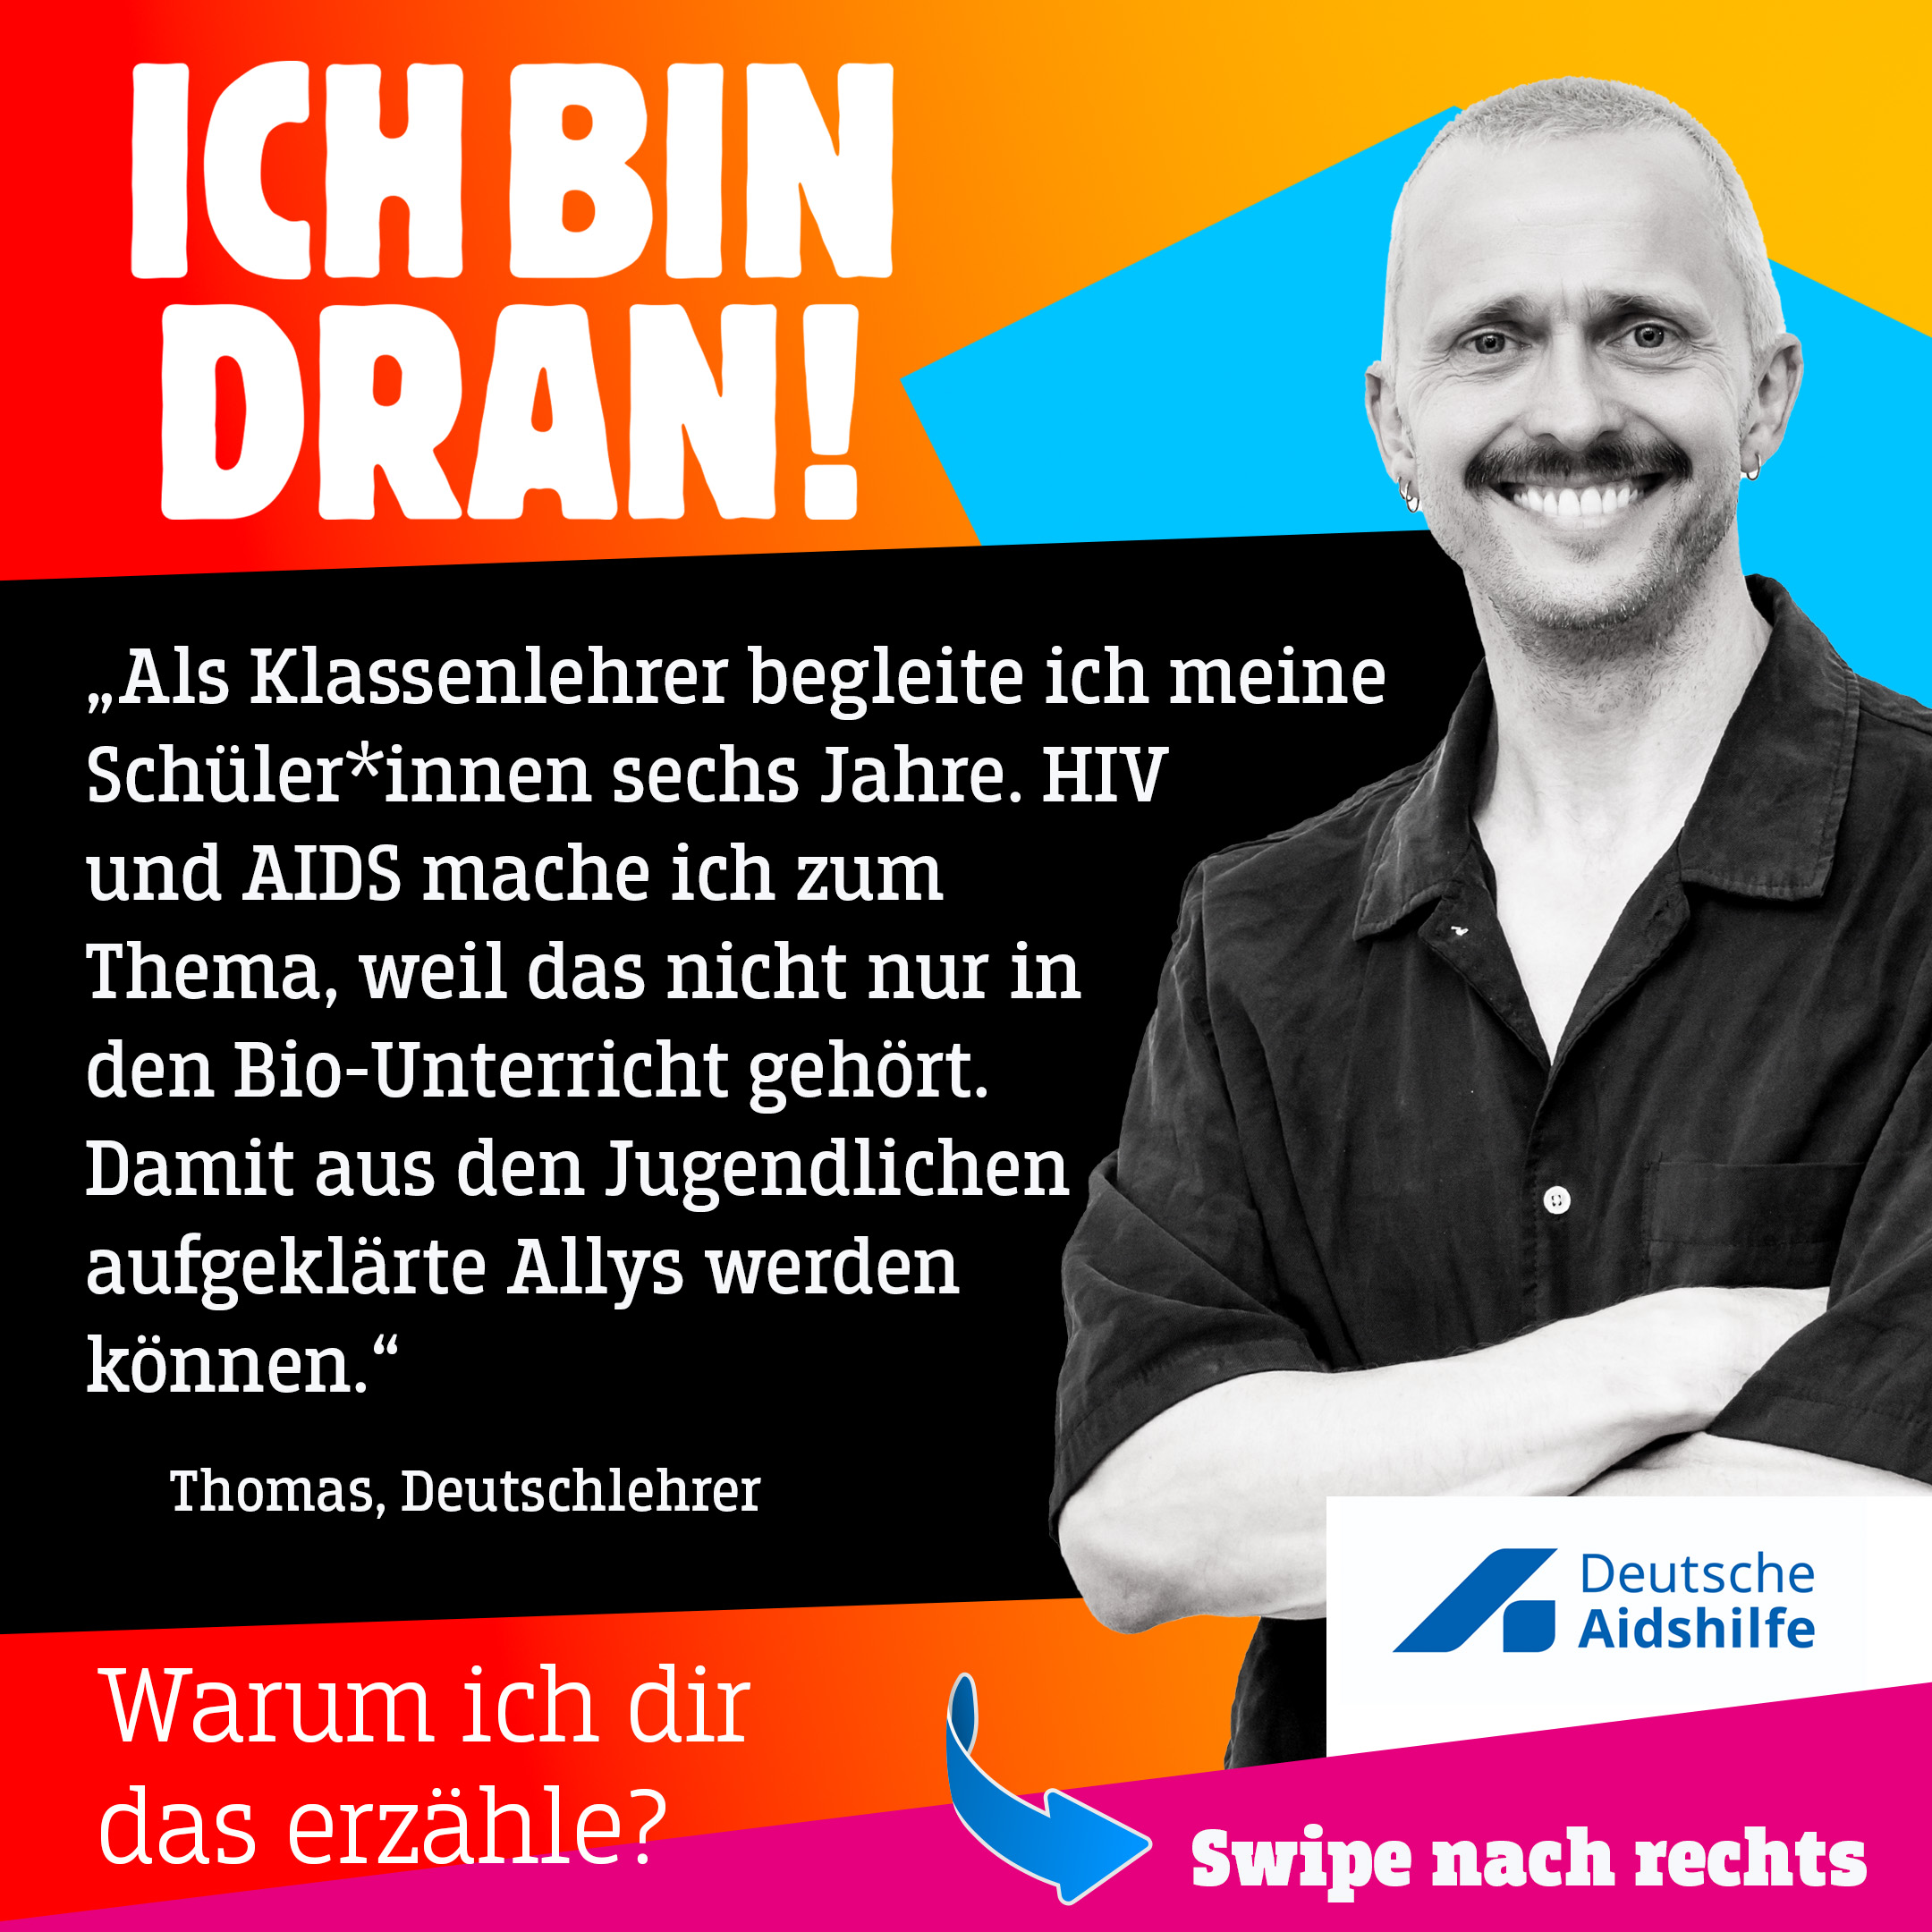 Thomas sagt: "HIV und AIDS mache ich zum Thema, weil das nicht nur in den Bio-Unterricht gehört."